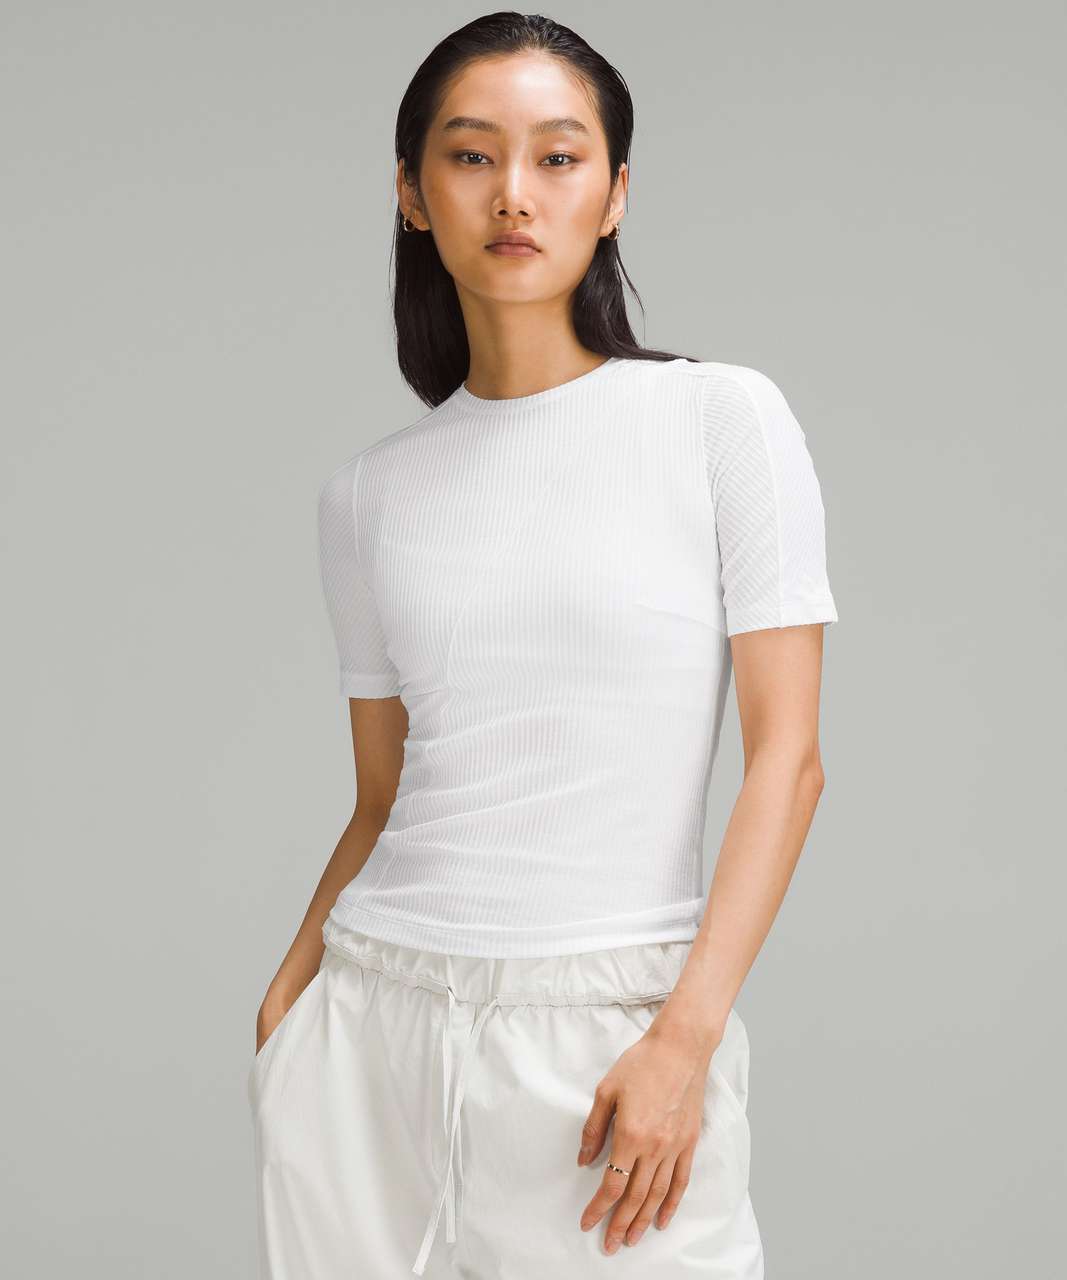 Lululemon Asymmetrical Ribbed Cotton Long-Sleeve Shirt - Nomad